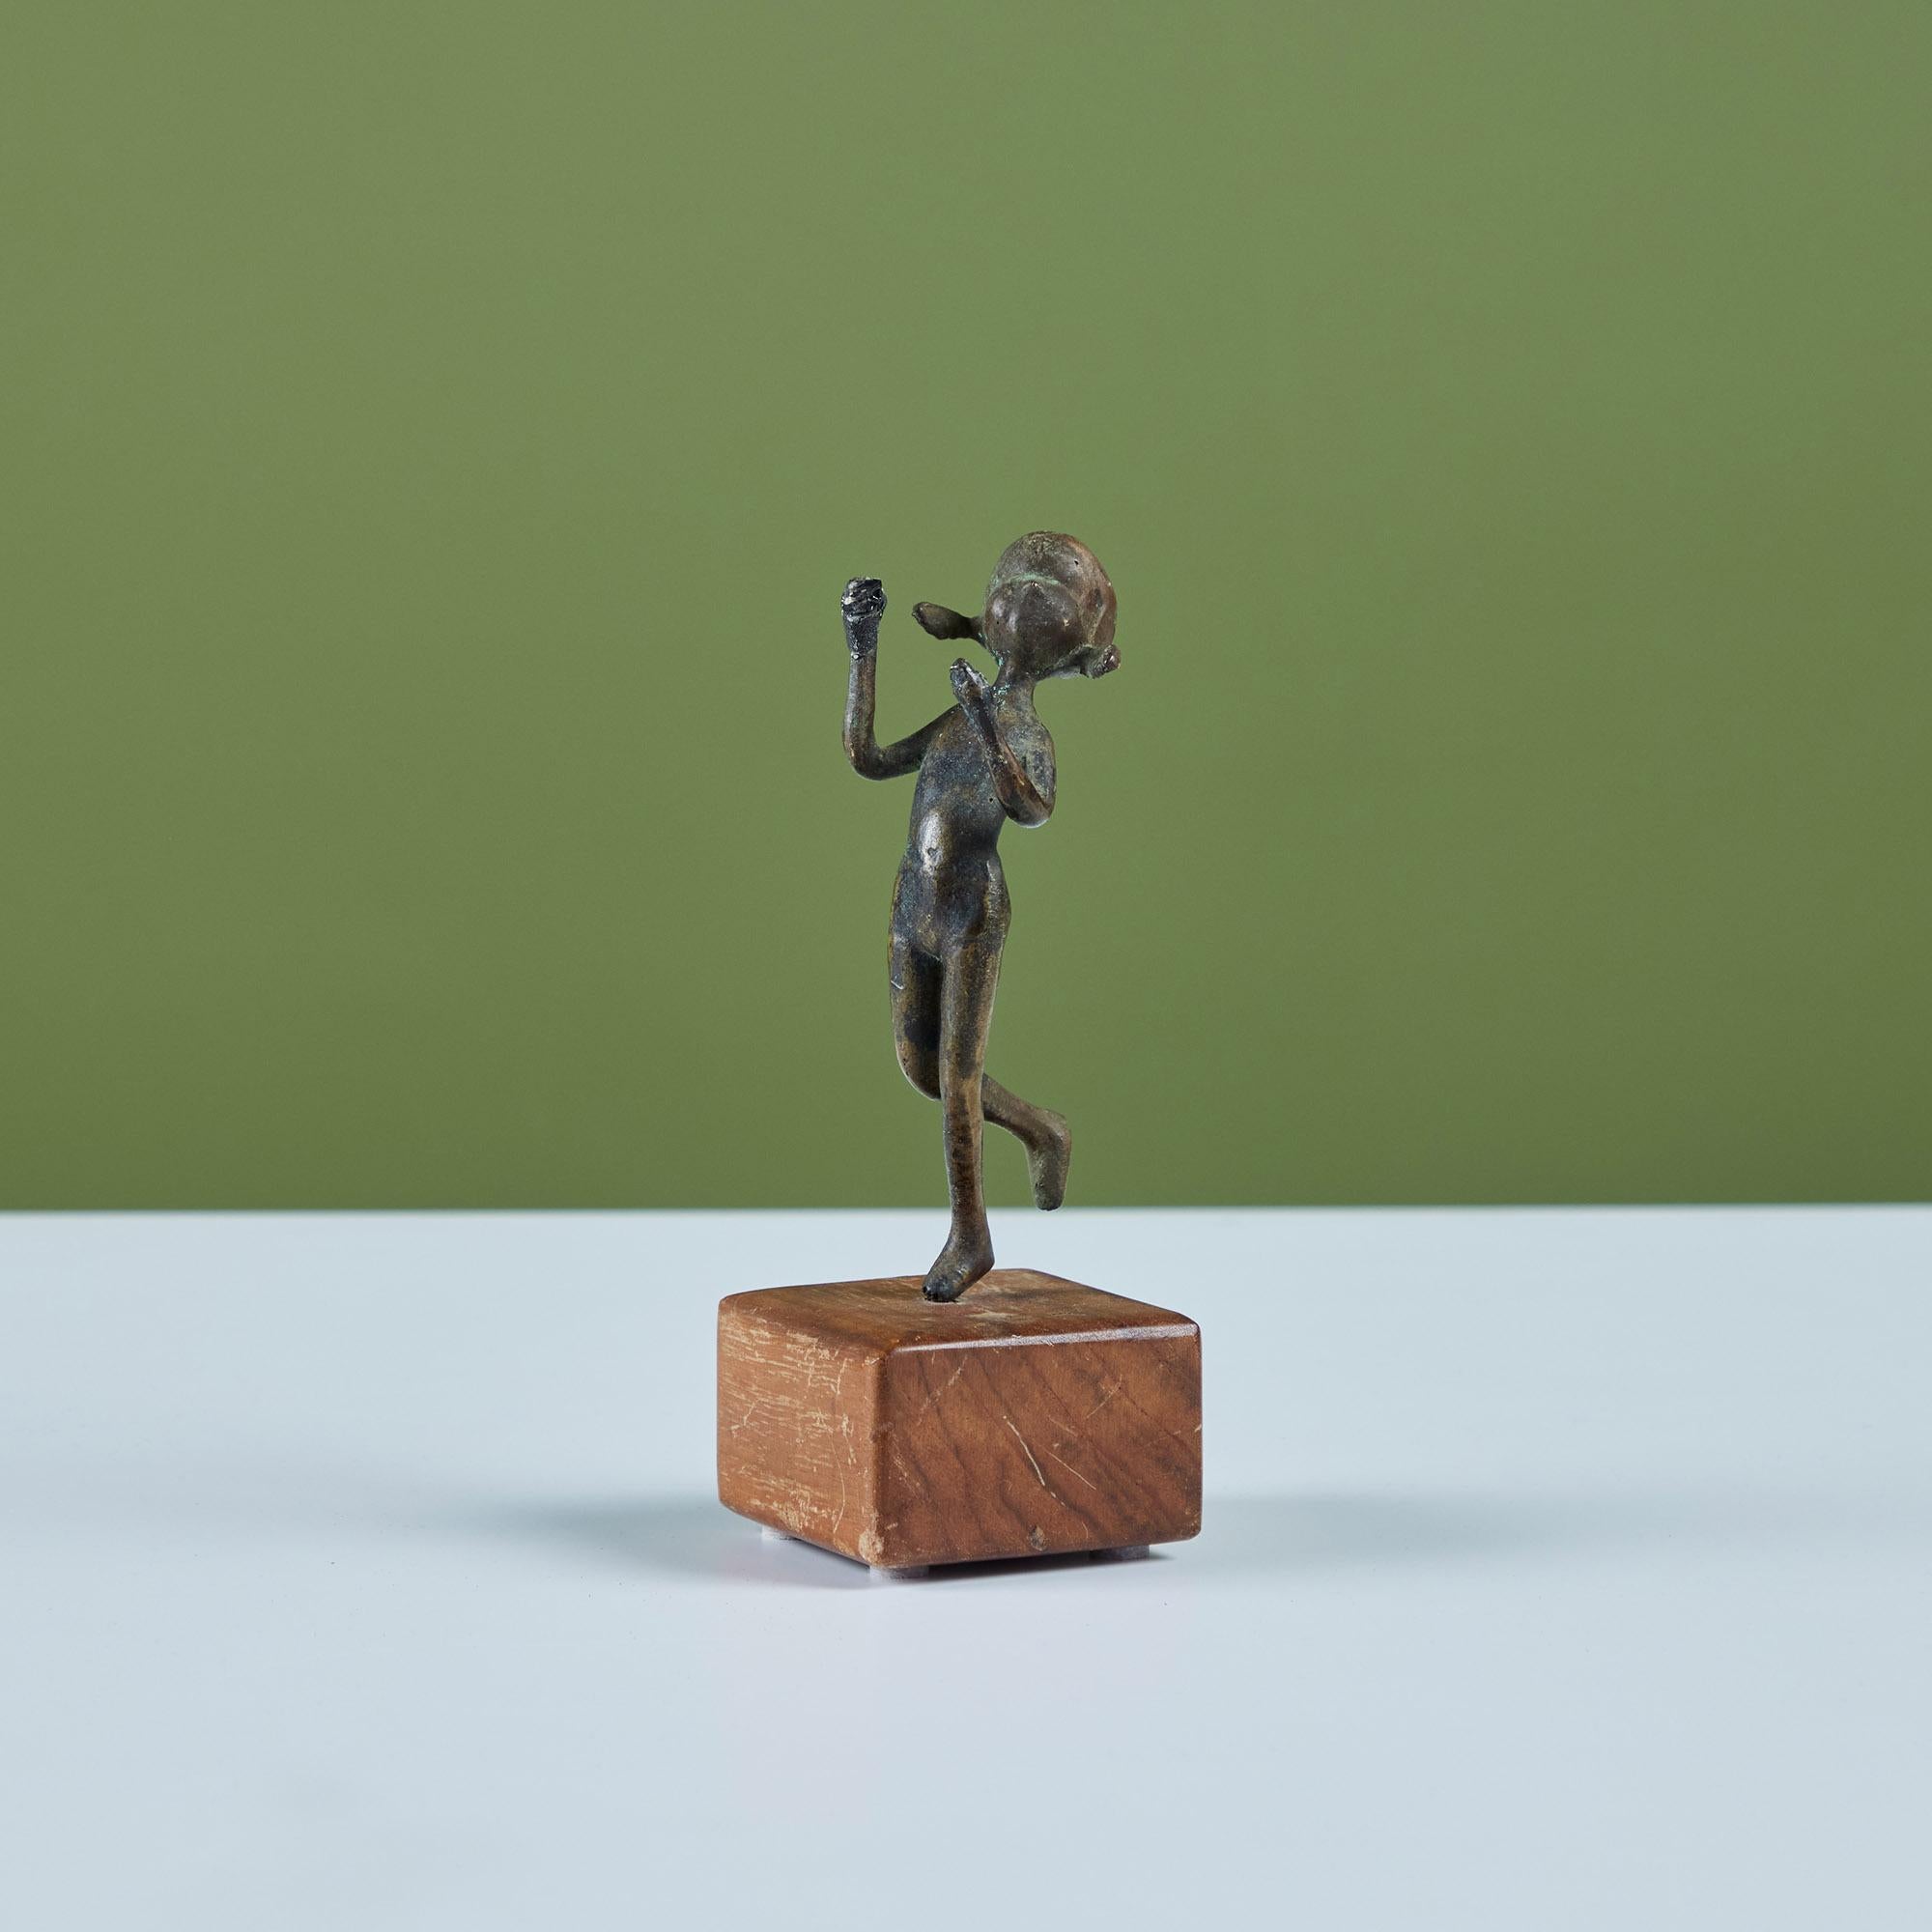 Gegossene Bronzeskulptur eines Kindes mit Zöpfen, montiert auf einem Holzsockel.

Abmessungen
2,5